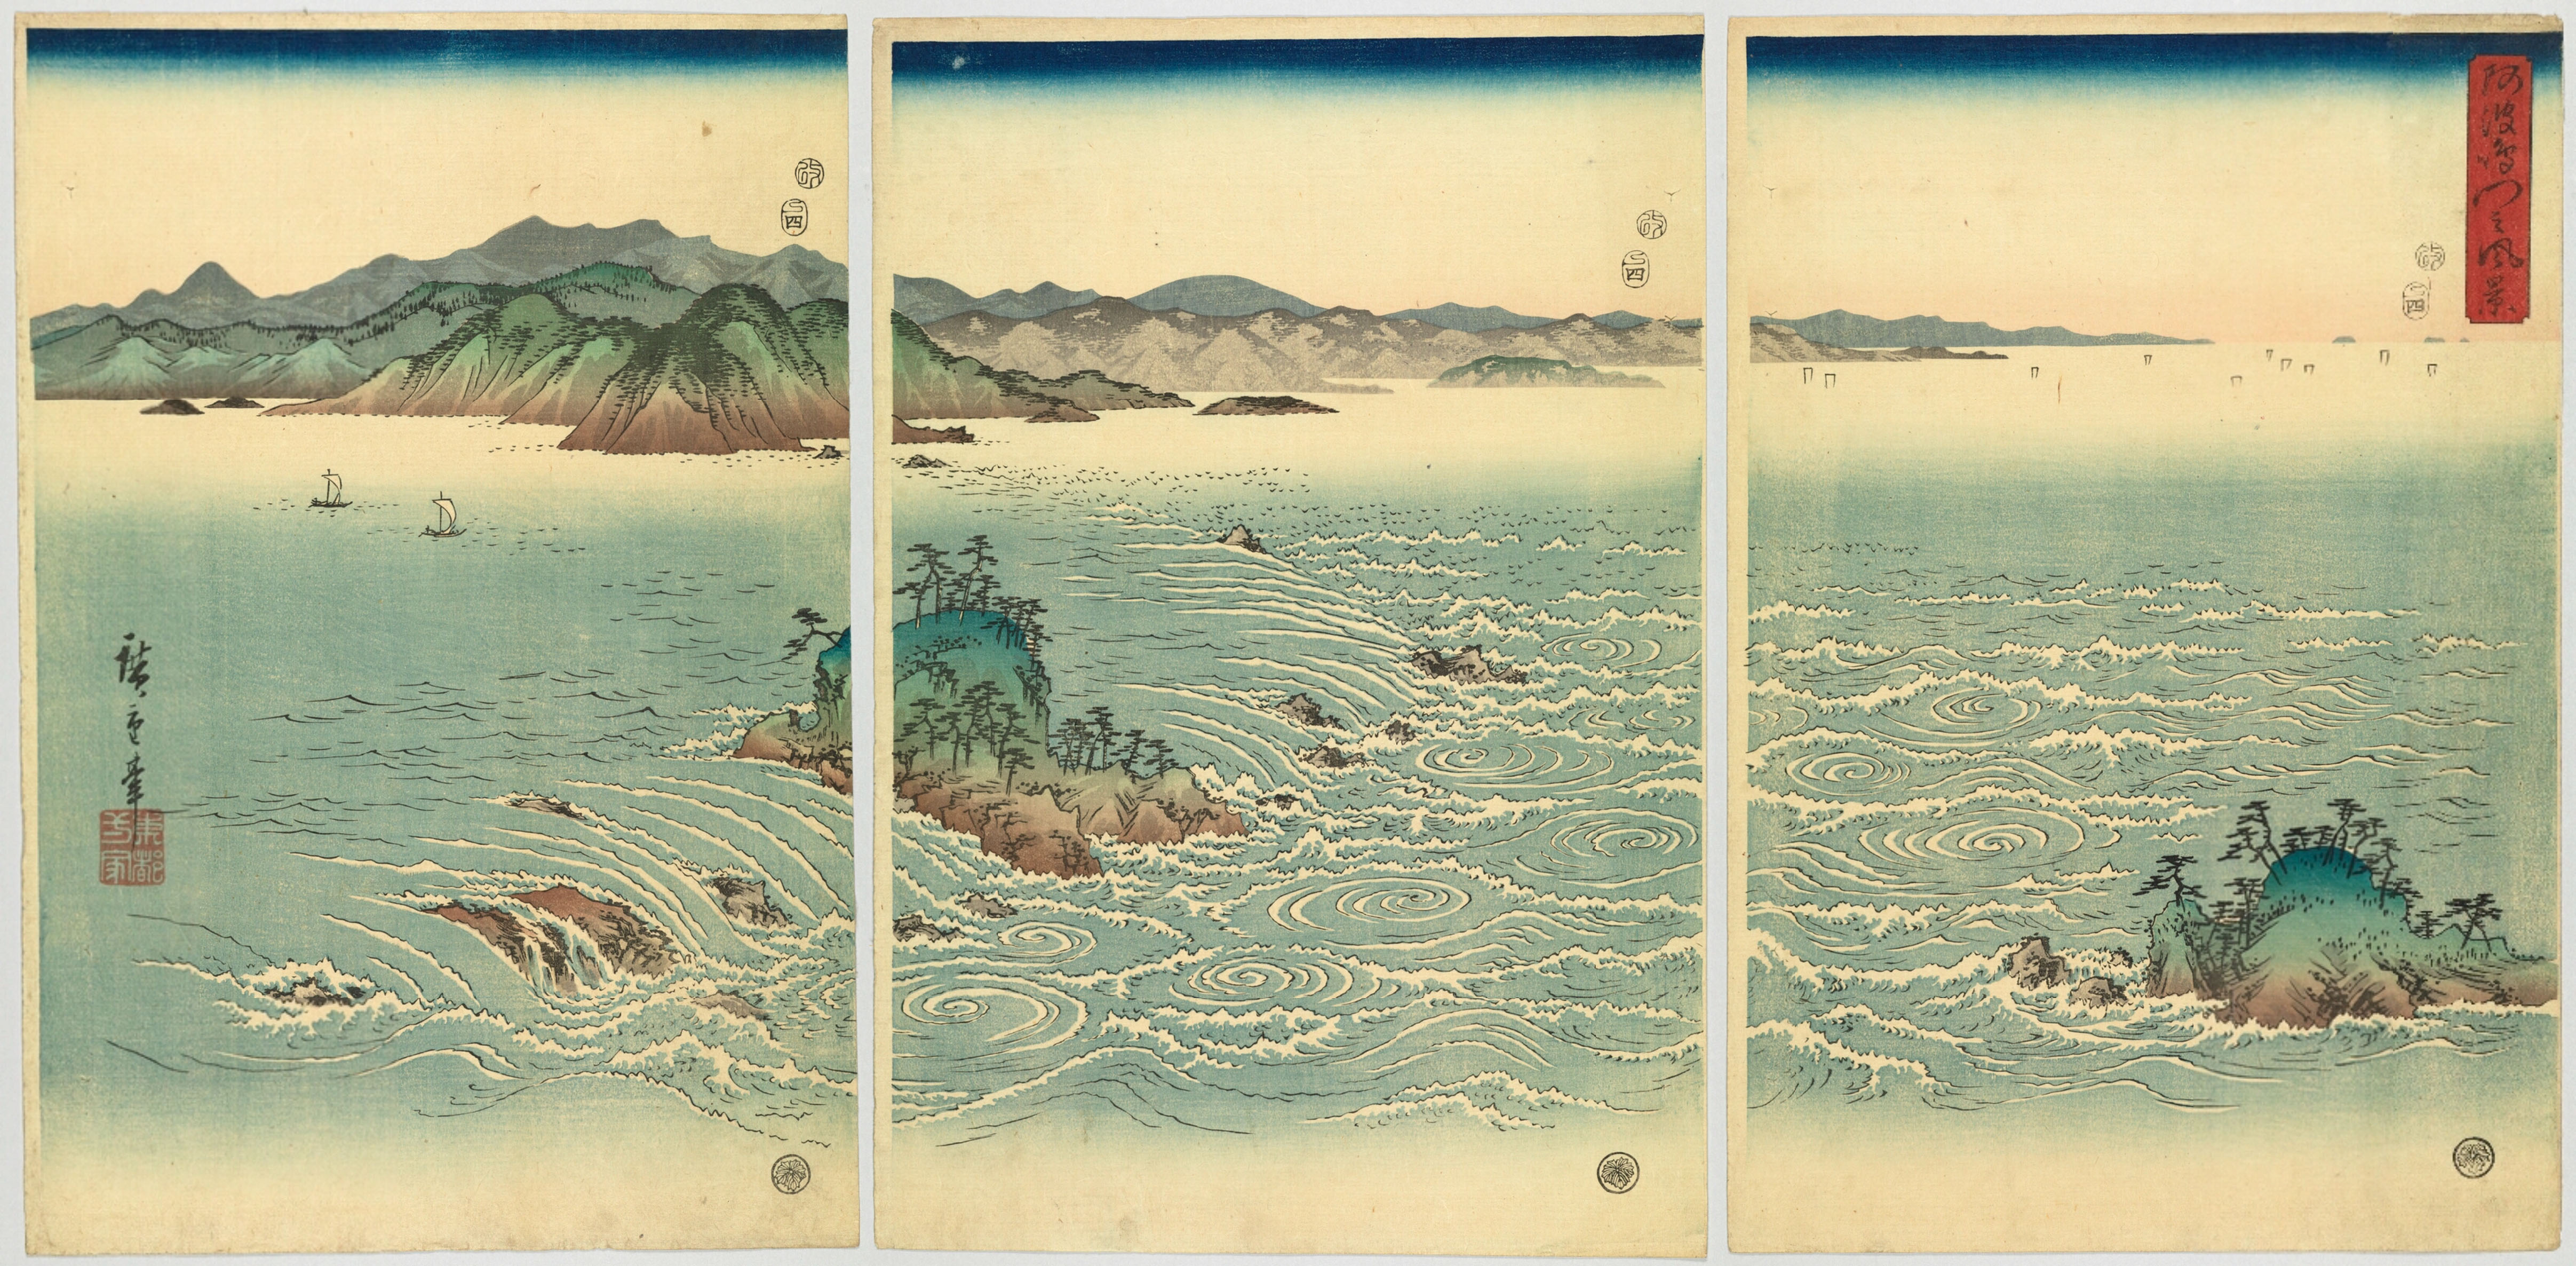 У моря на японском языке. Утагава Хиросигэ — Морское побережье в провинции Идзу, 1852. Японские Гравюры Хиросигэ волна. Японские Гравюры Утагава Хиросигэ. Утагава Хиросигэ водоворот Наруто.